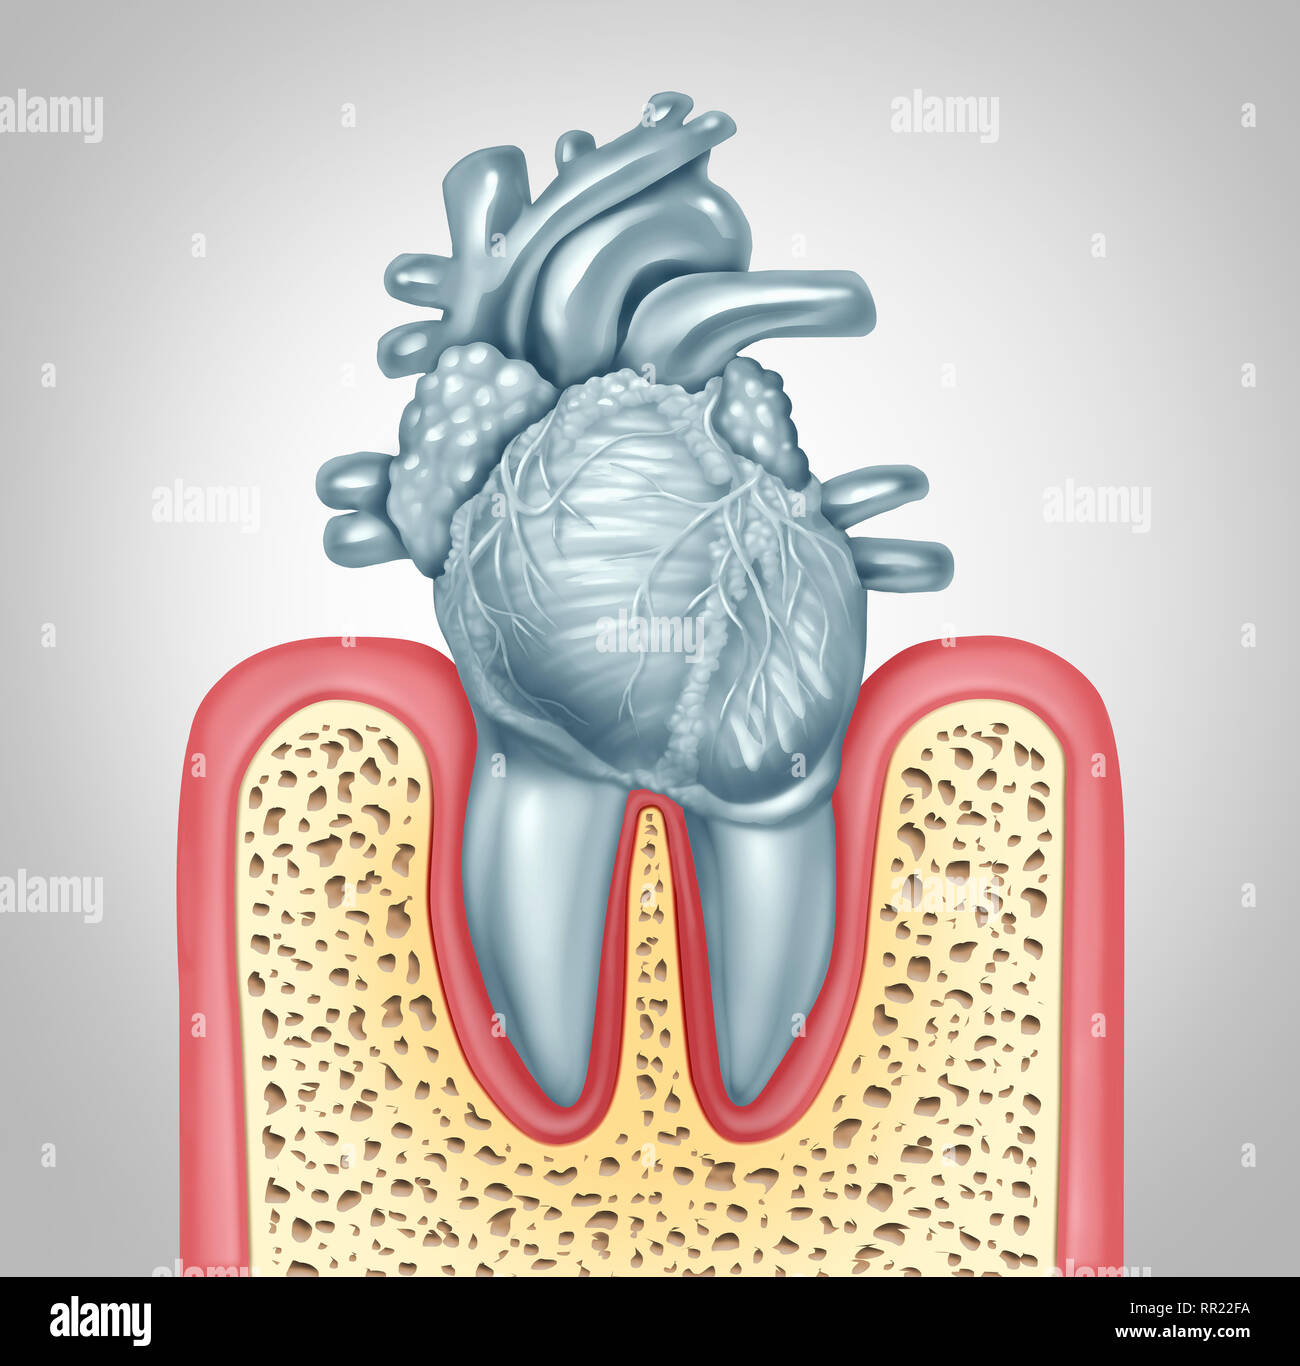 Les soins dentaires ou de santé orale et la maladie cardiaque causée par le concept d'hygiène de la plaque dentaire et des gencives, infections dues à des bactéries de la bouche d'endommager les soupapes. Banque D'Images